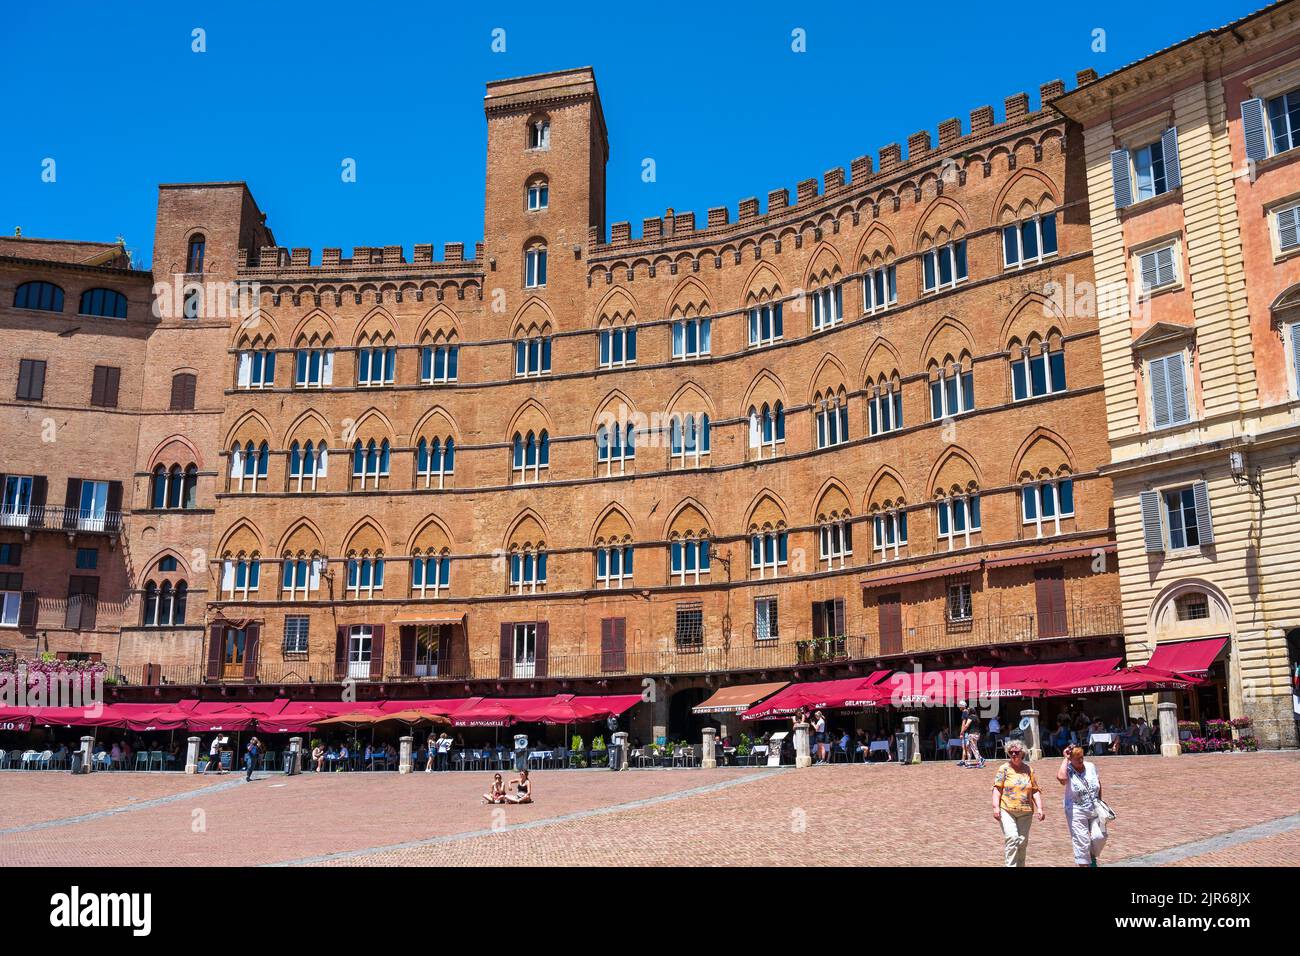 Cafés al aire libre y edificios medievales que rodean la Piazza del Campo en Siena, Toscana, Italia Foto de stock